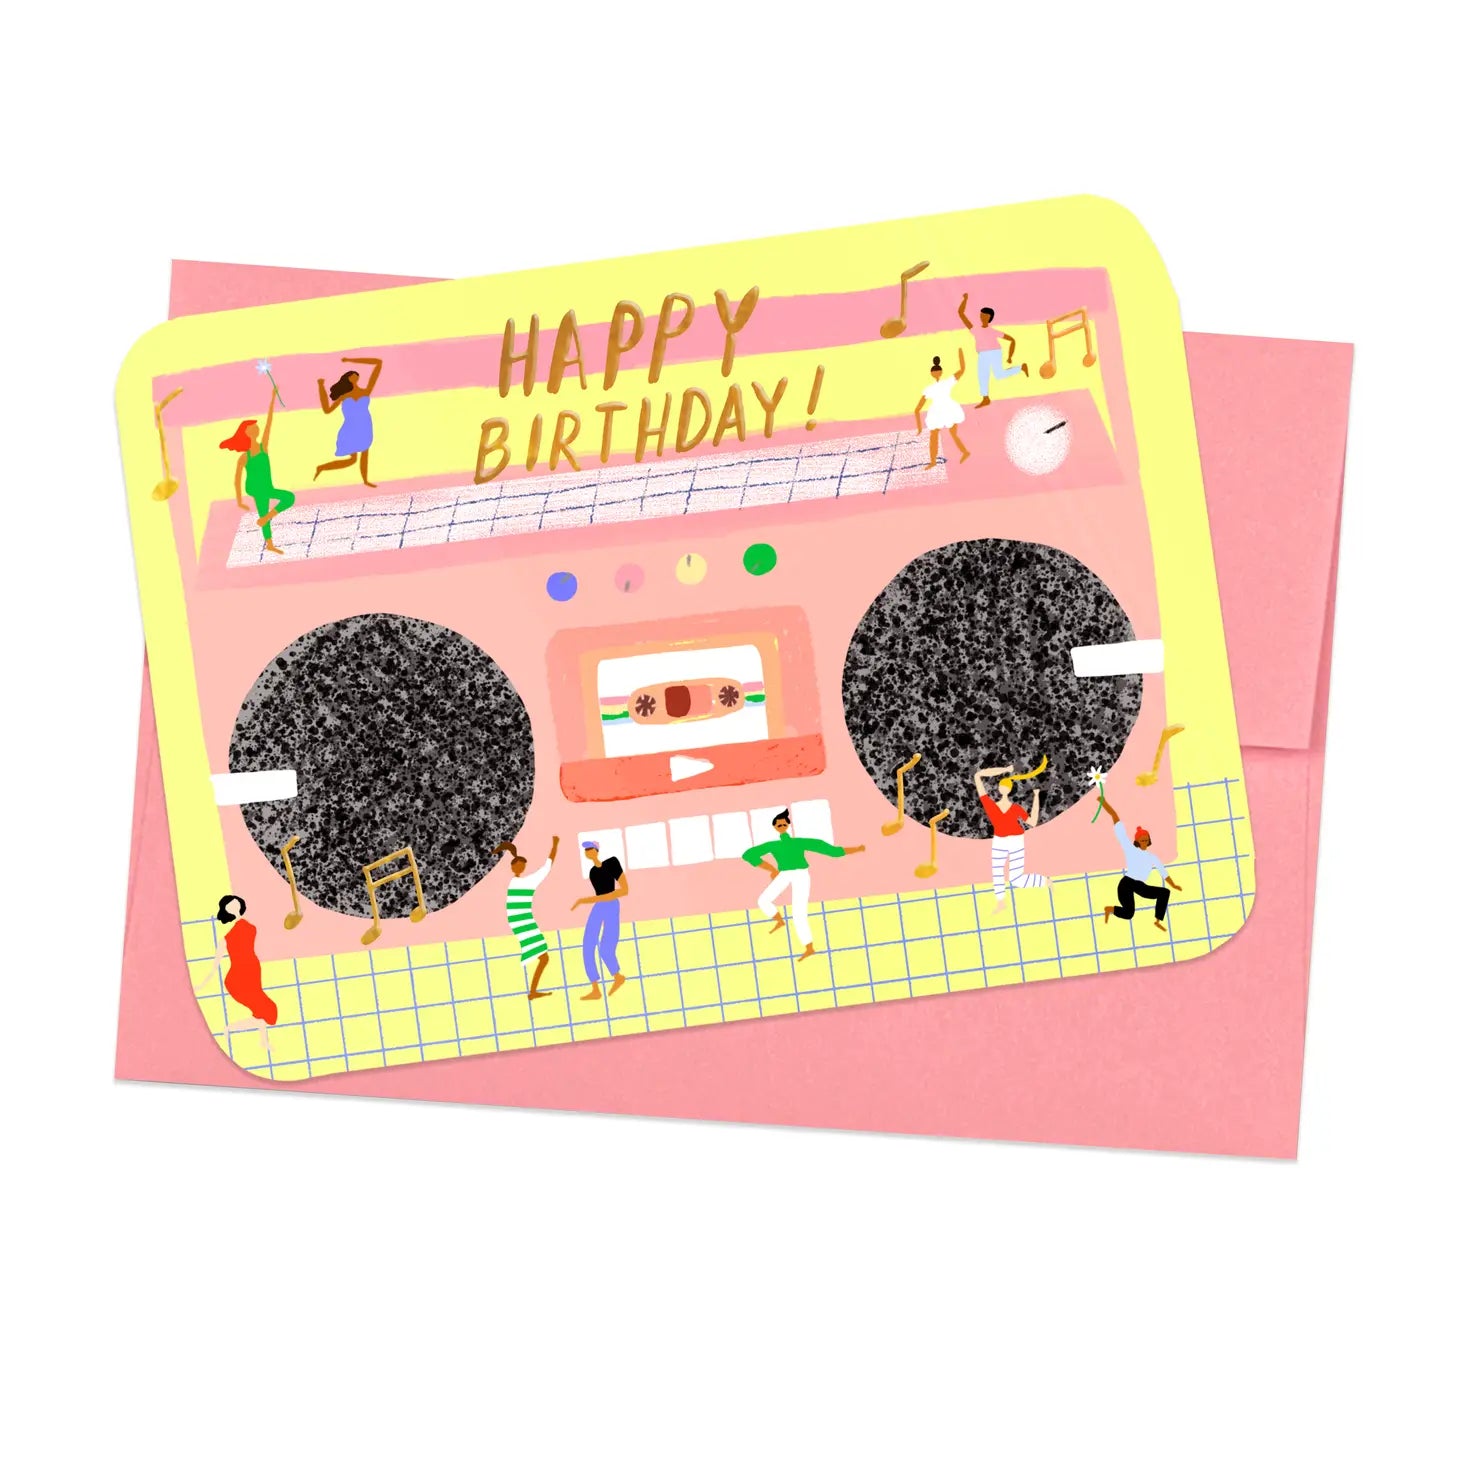 Boom Box Birthday Card